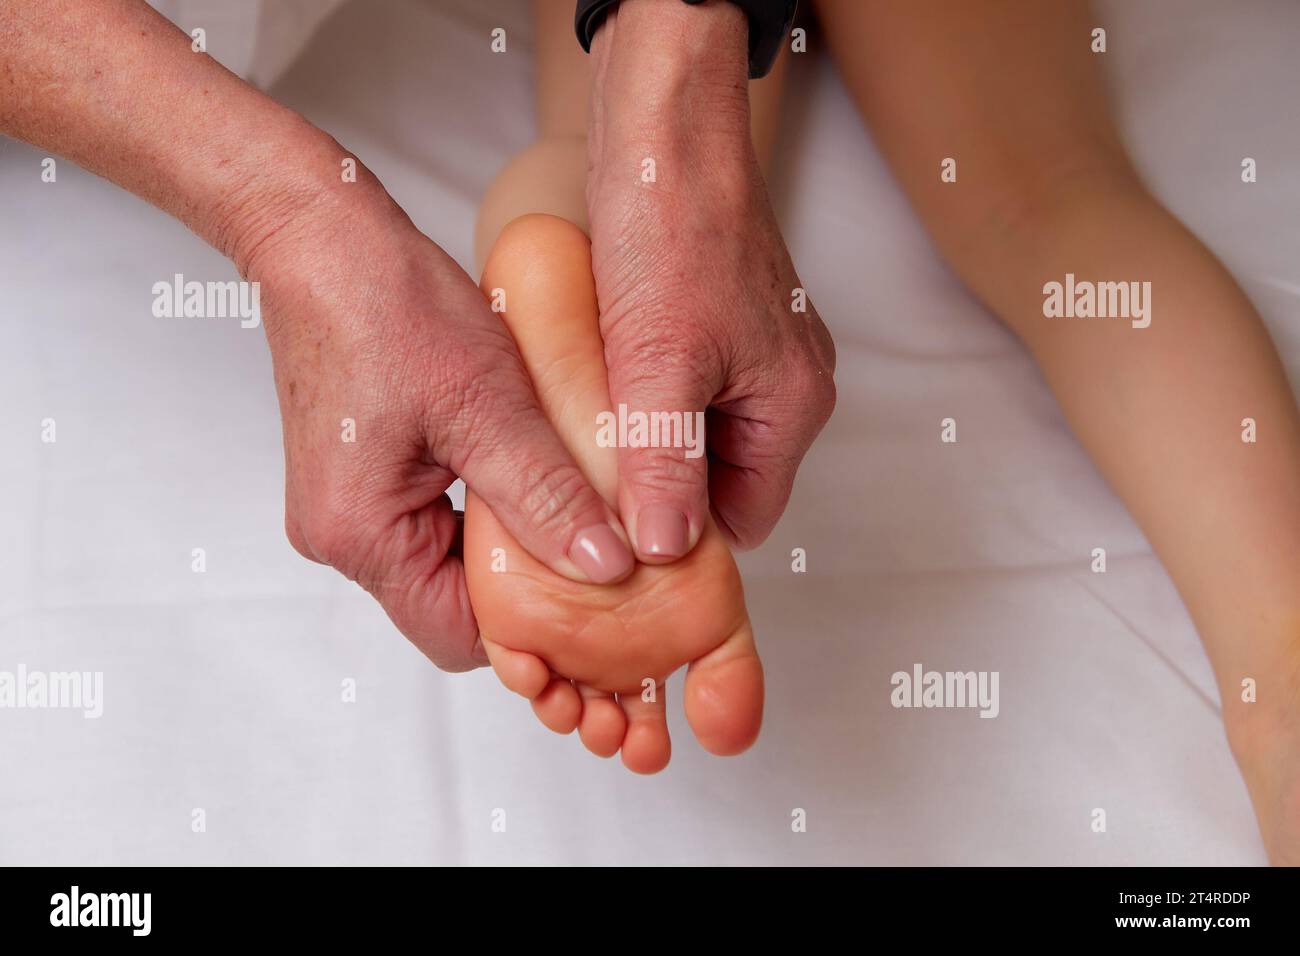 Großaufnahme der Hände eines Facharztes, der eine pädiatrische Fußmassage zur Verbesserung der Durchblutung im Kinderkörper durchführt Stockfoto